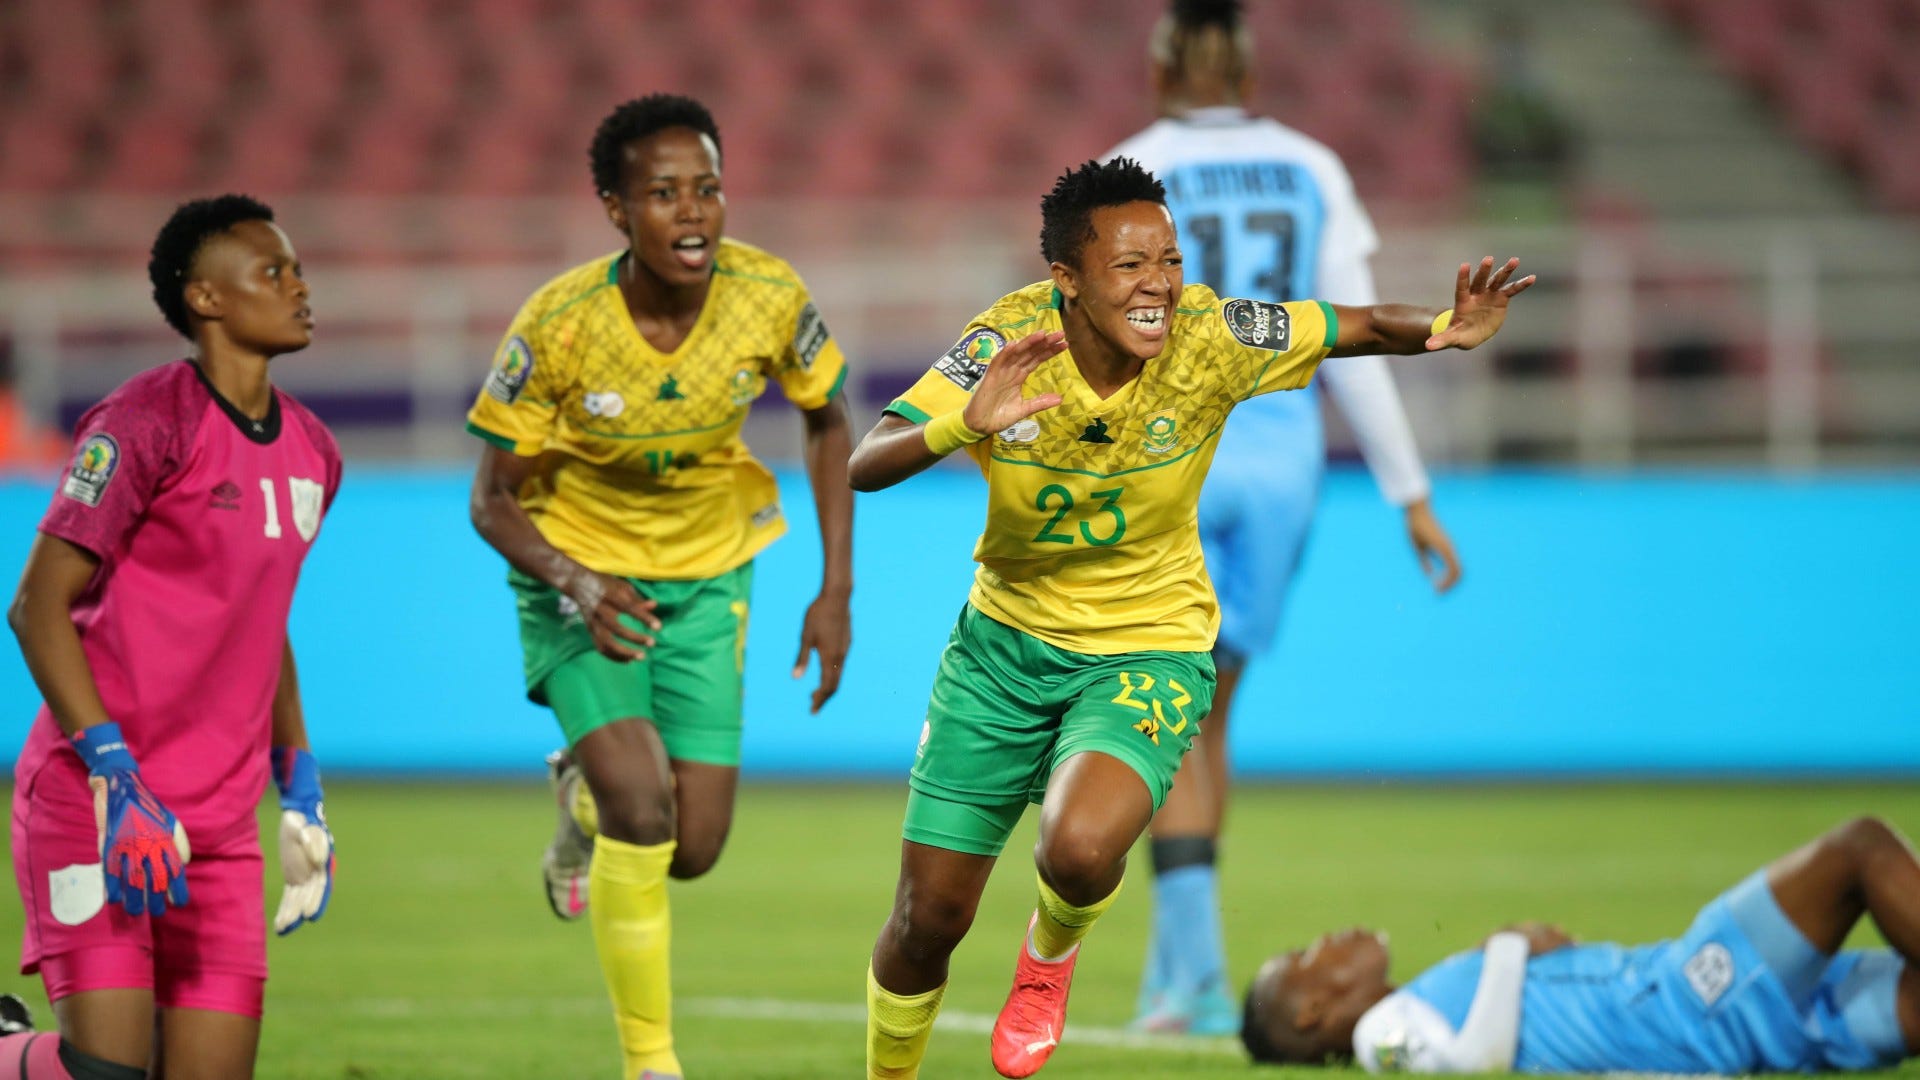 Nthabiseng Ronisha Majiya of South Africa against Botswana, July 2022